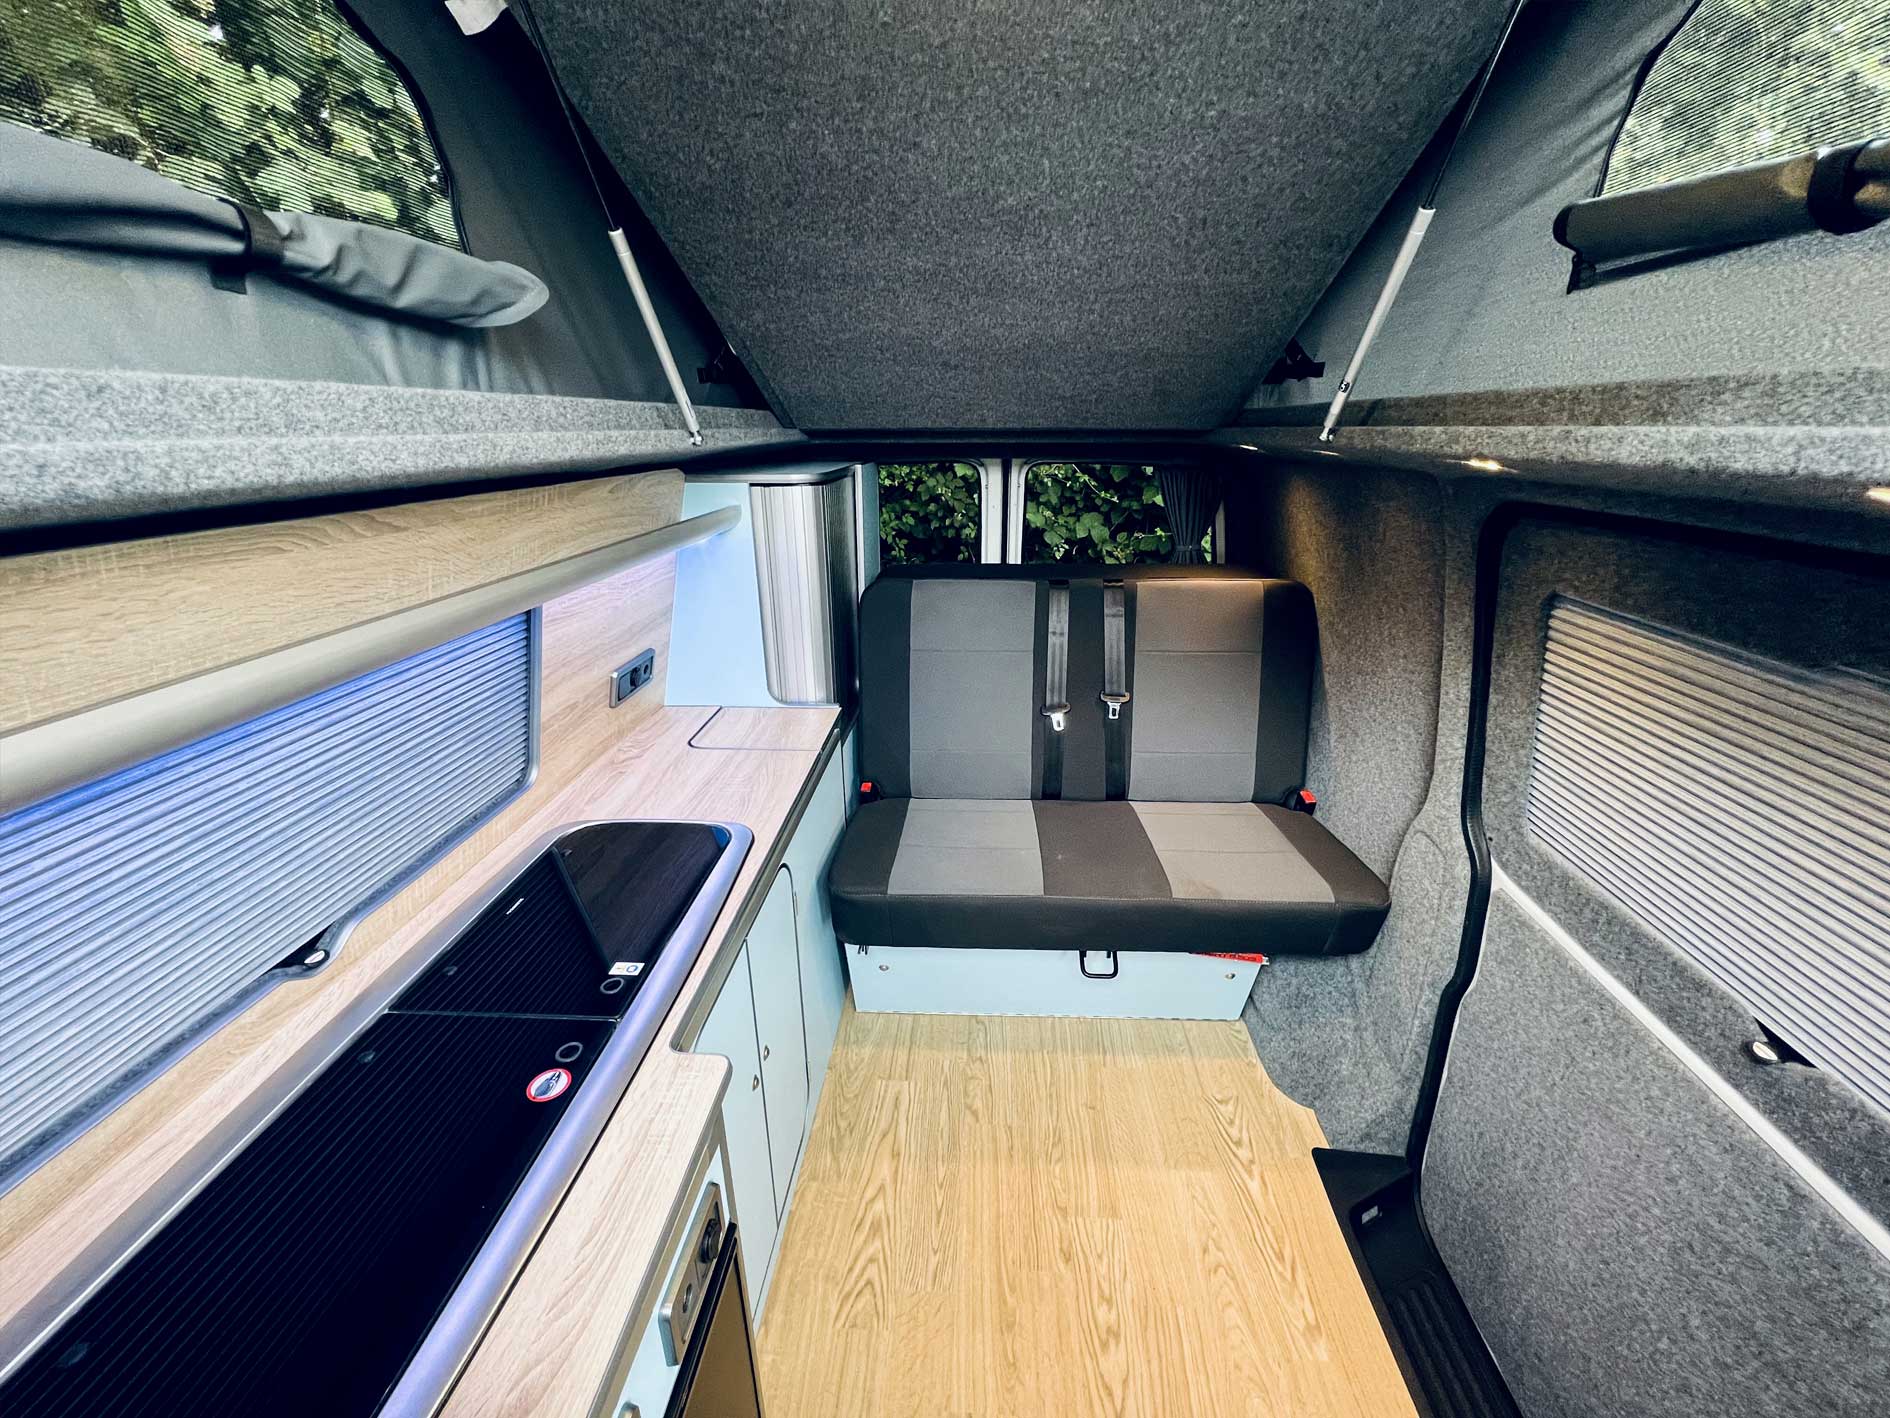 spacious camper van conversion interior